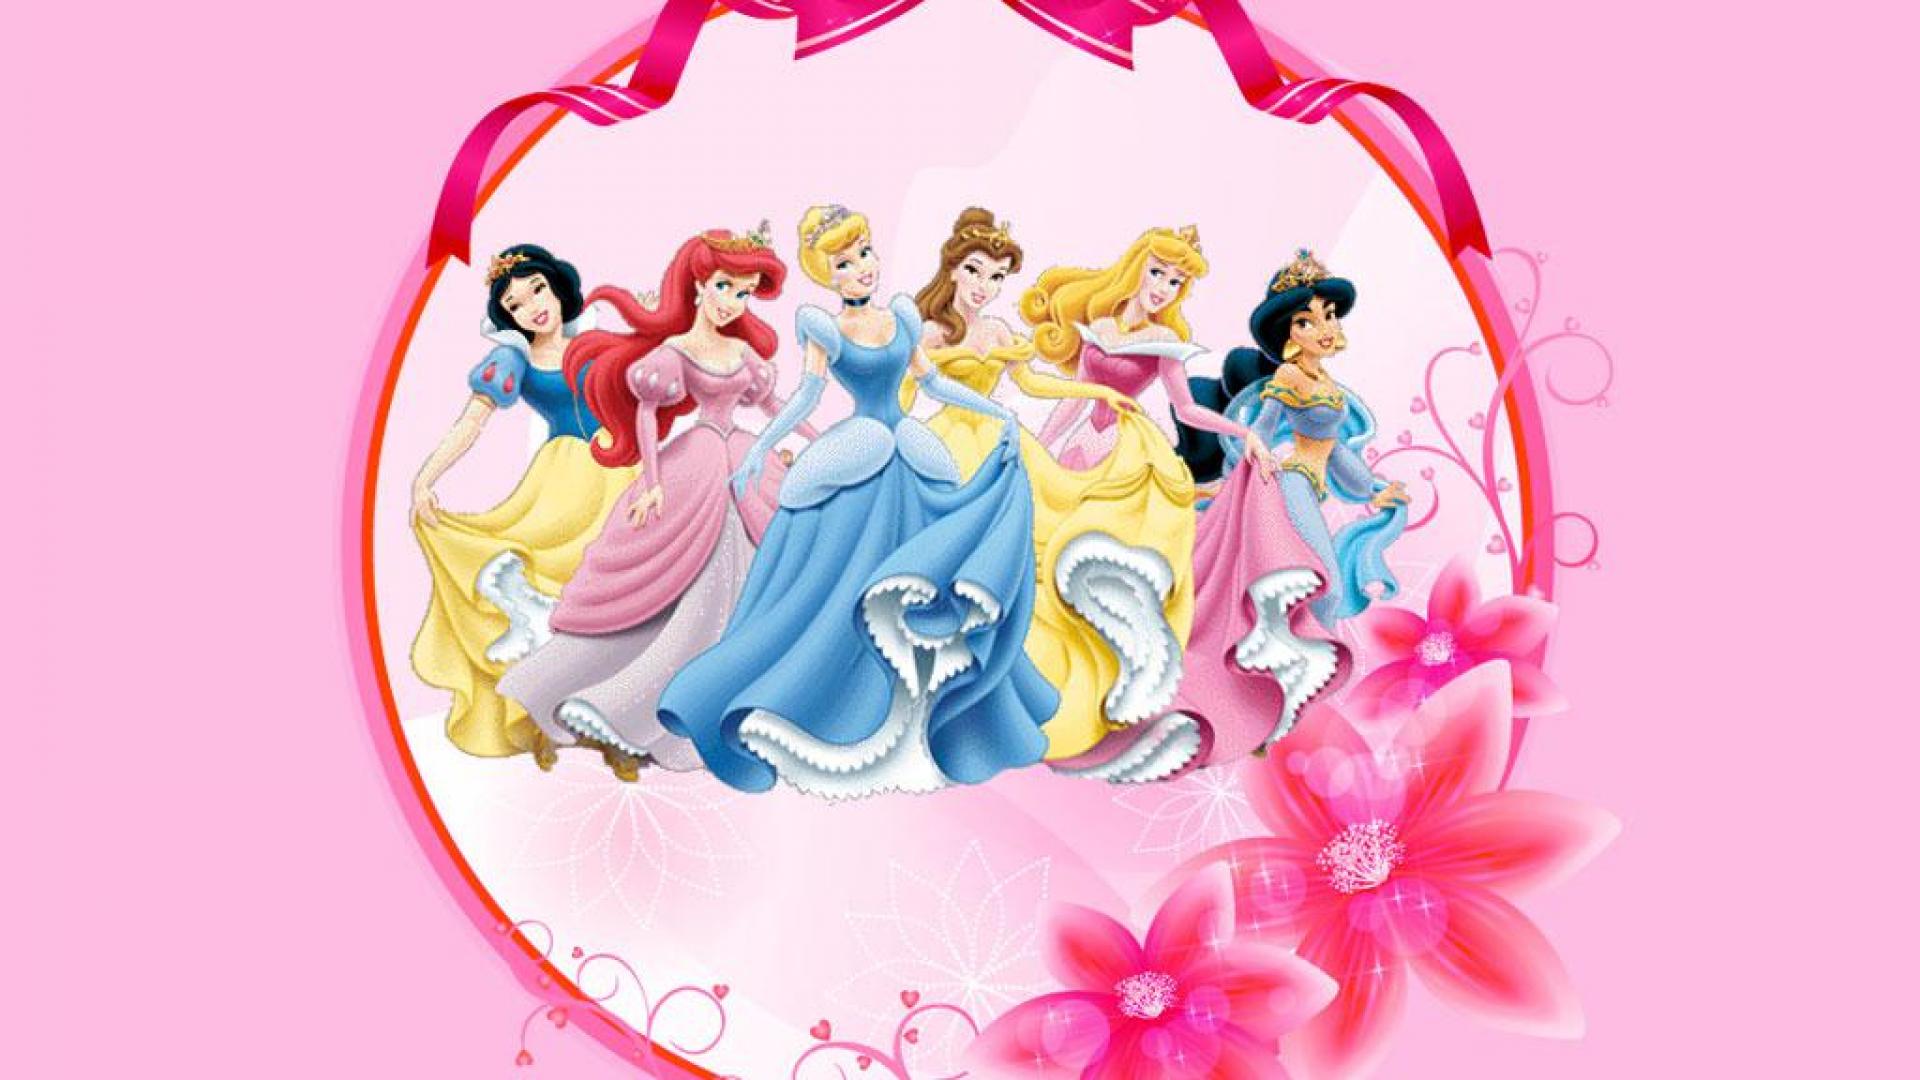 Disney princesses - - High Quality and Resolution